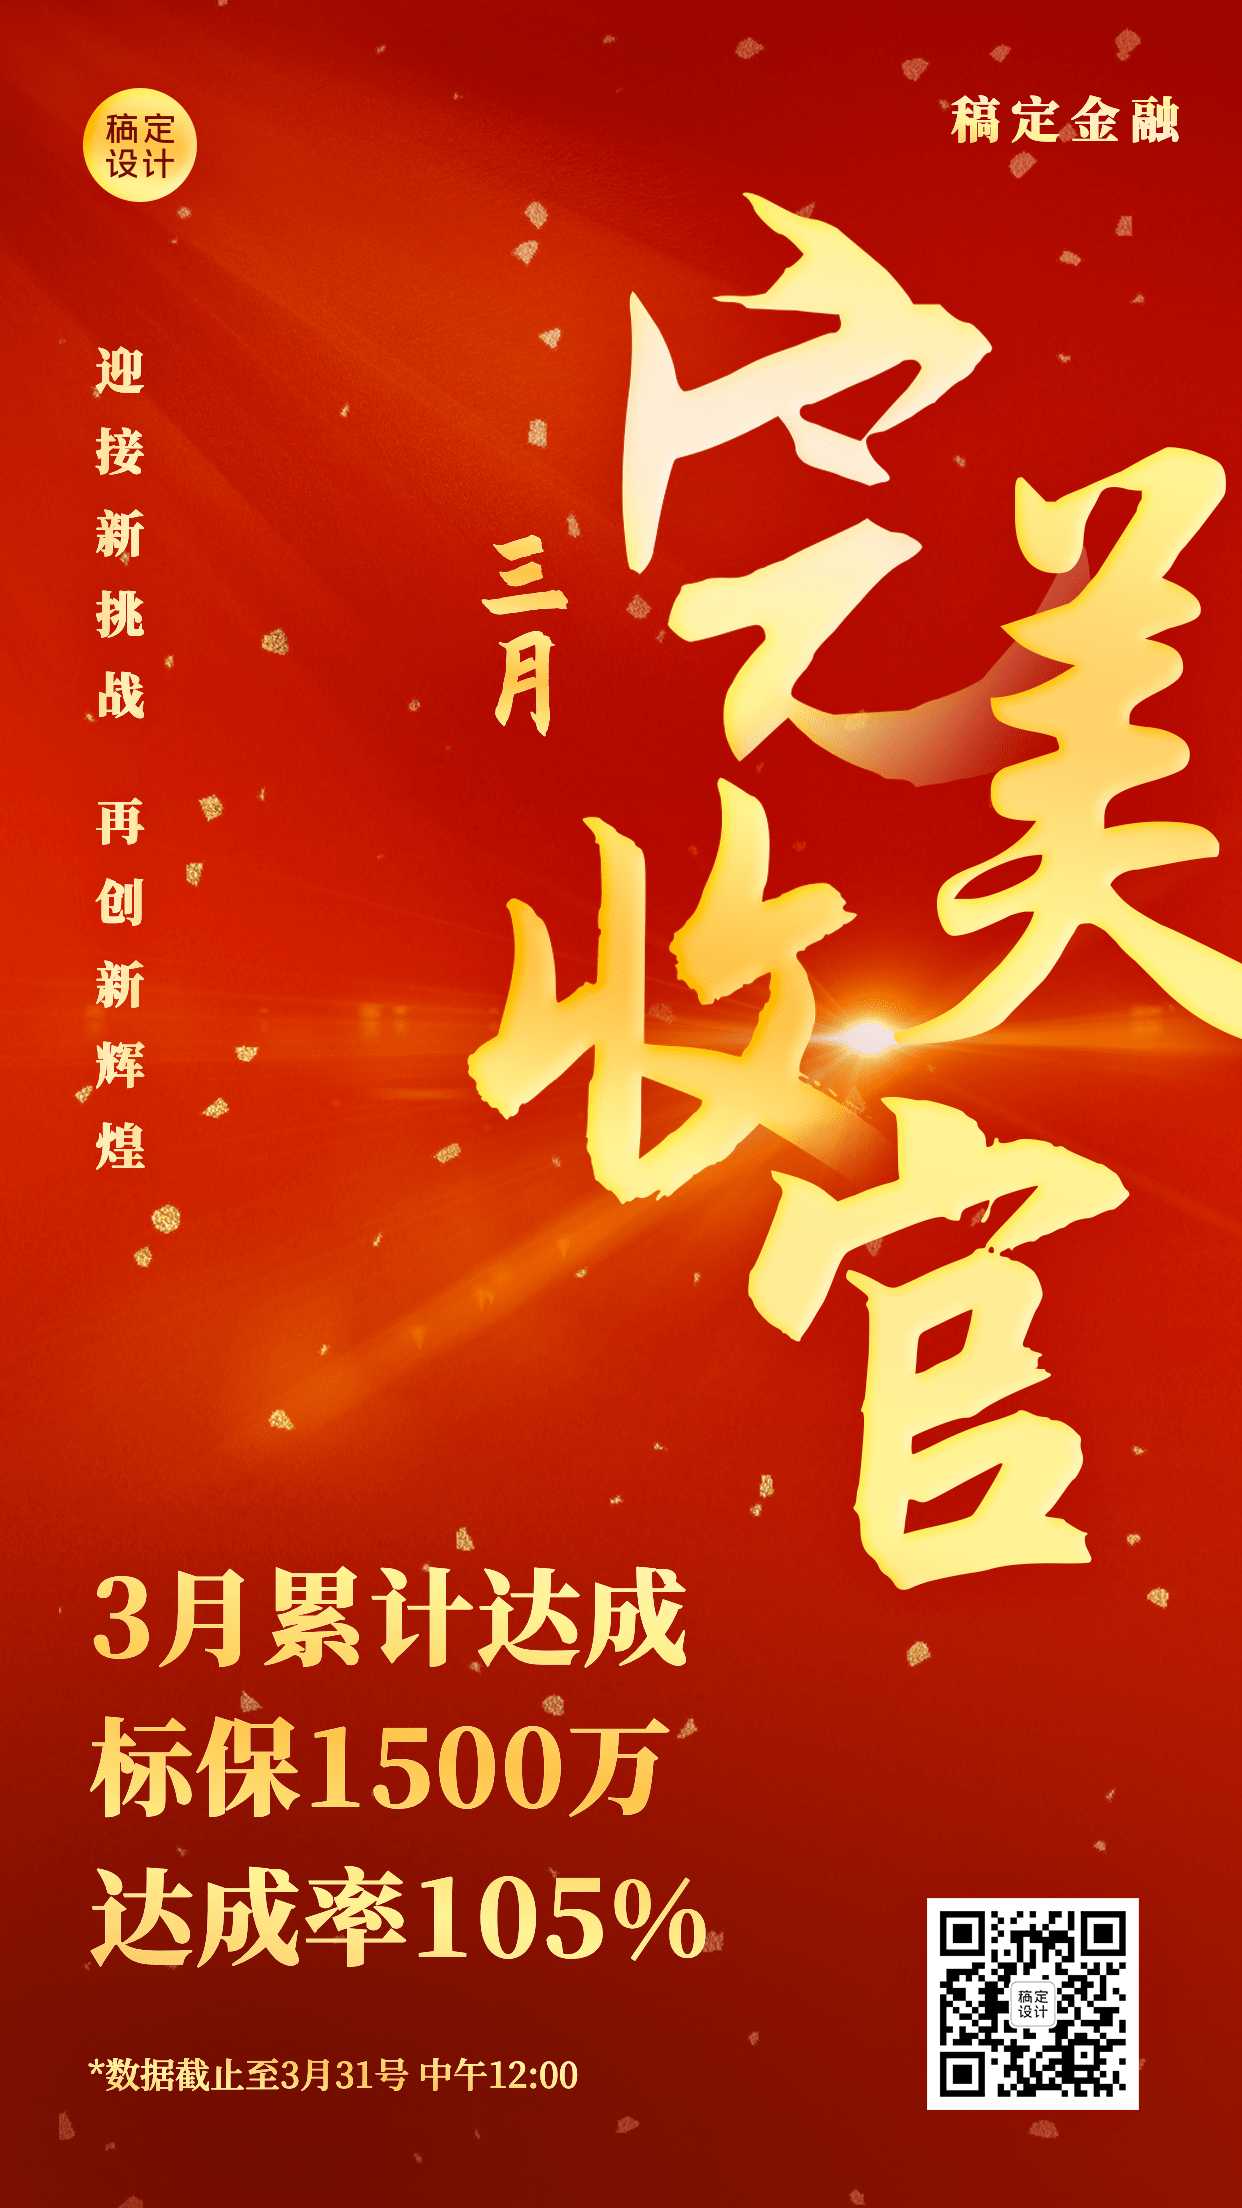 金融保险宣传推广喜庆海报预览效果